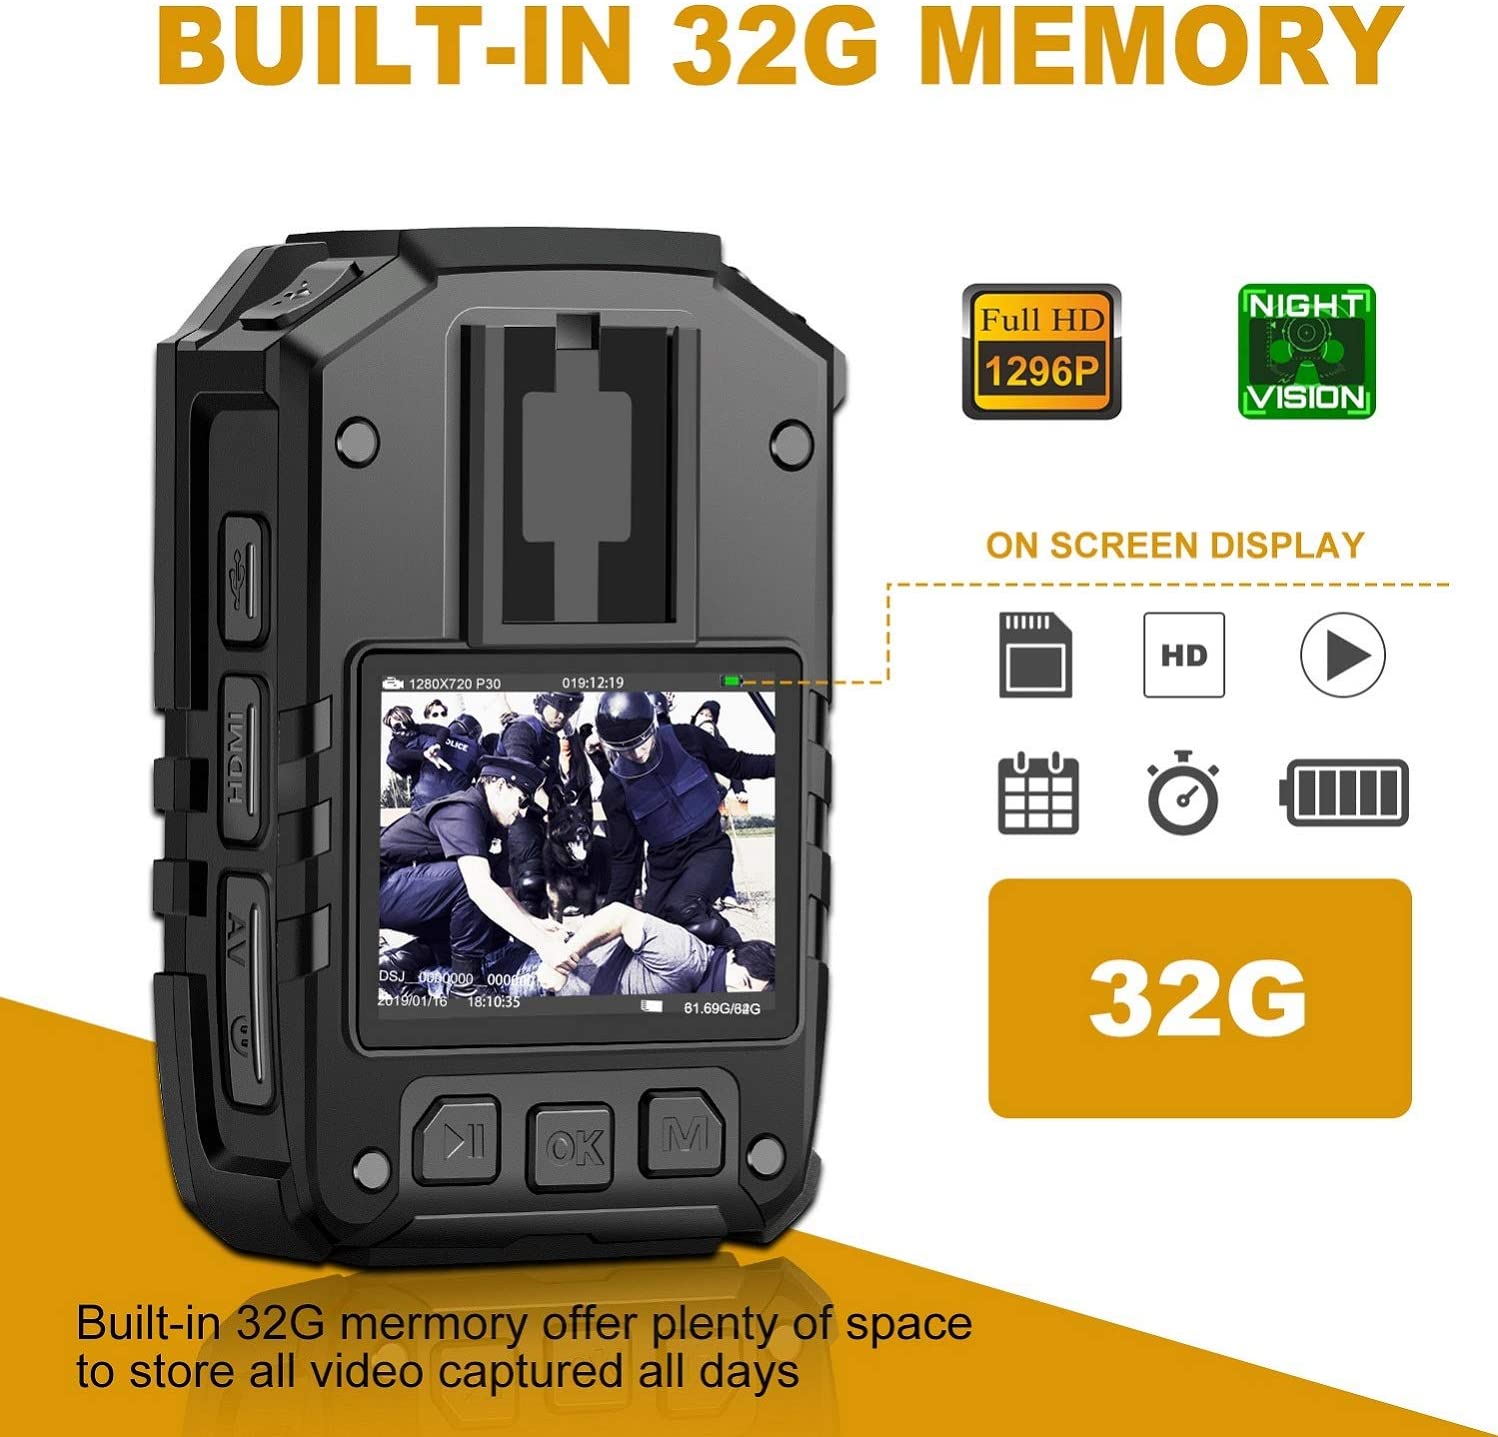 CAMMHD Cámara corporal 1296P HD con grabación de audio y video 15 horas, 32  GB impermeable visión nocturna patrulla cuerpo cámara para la aplicación